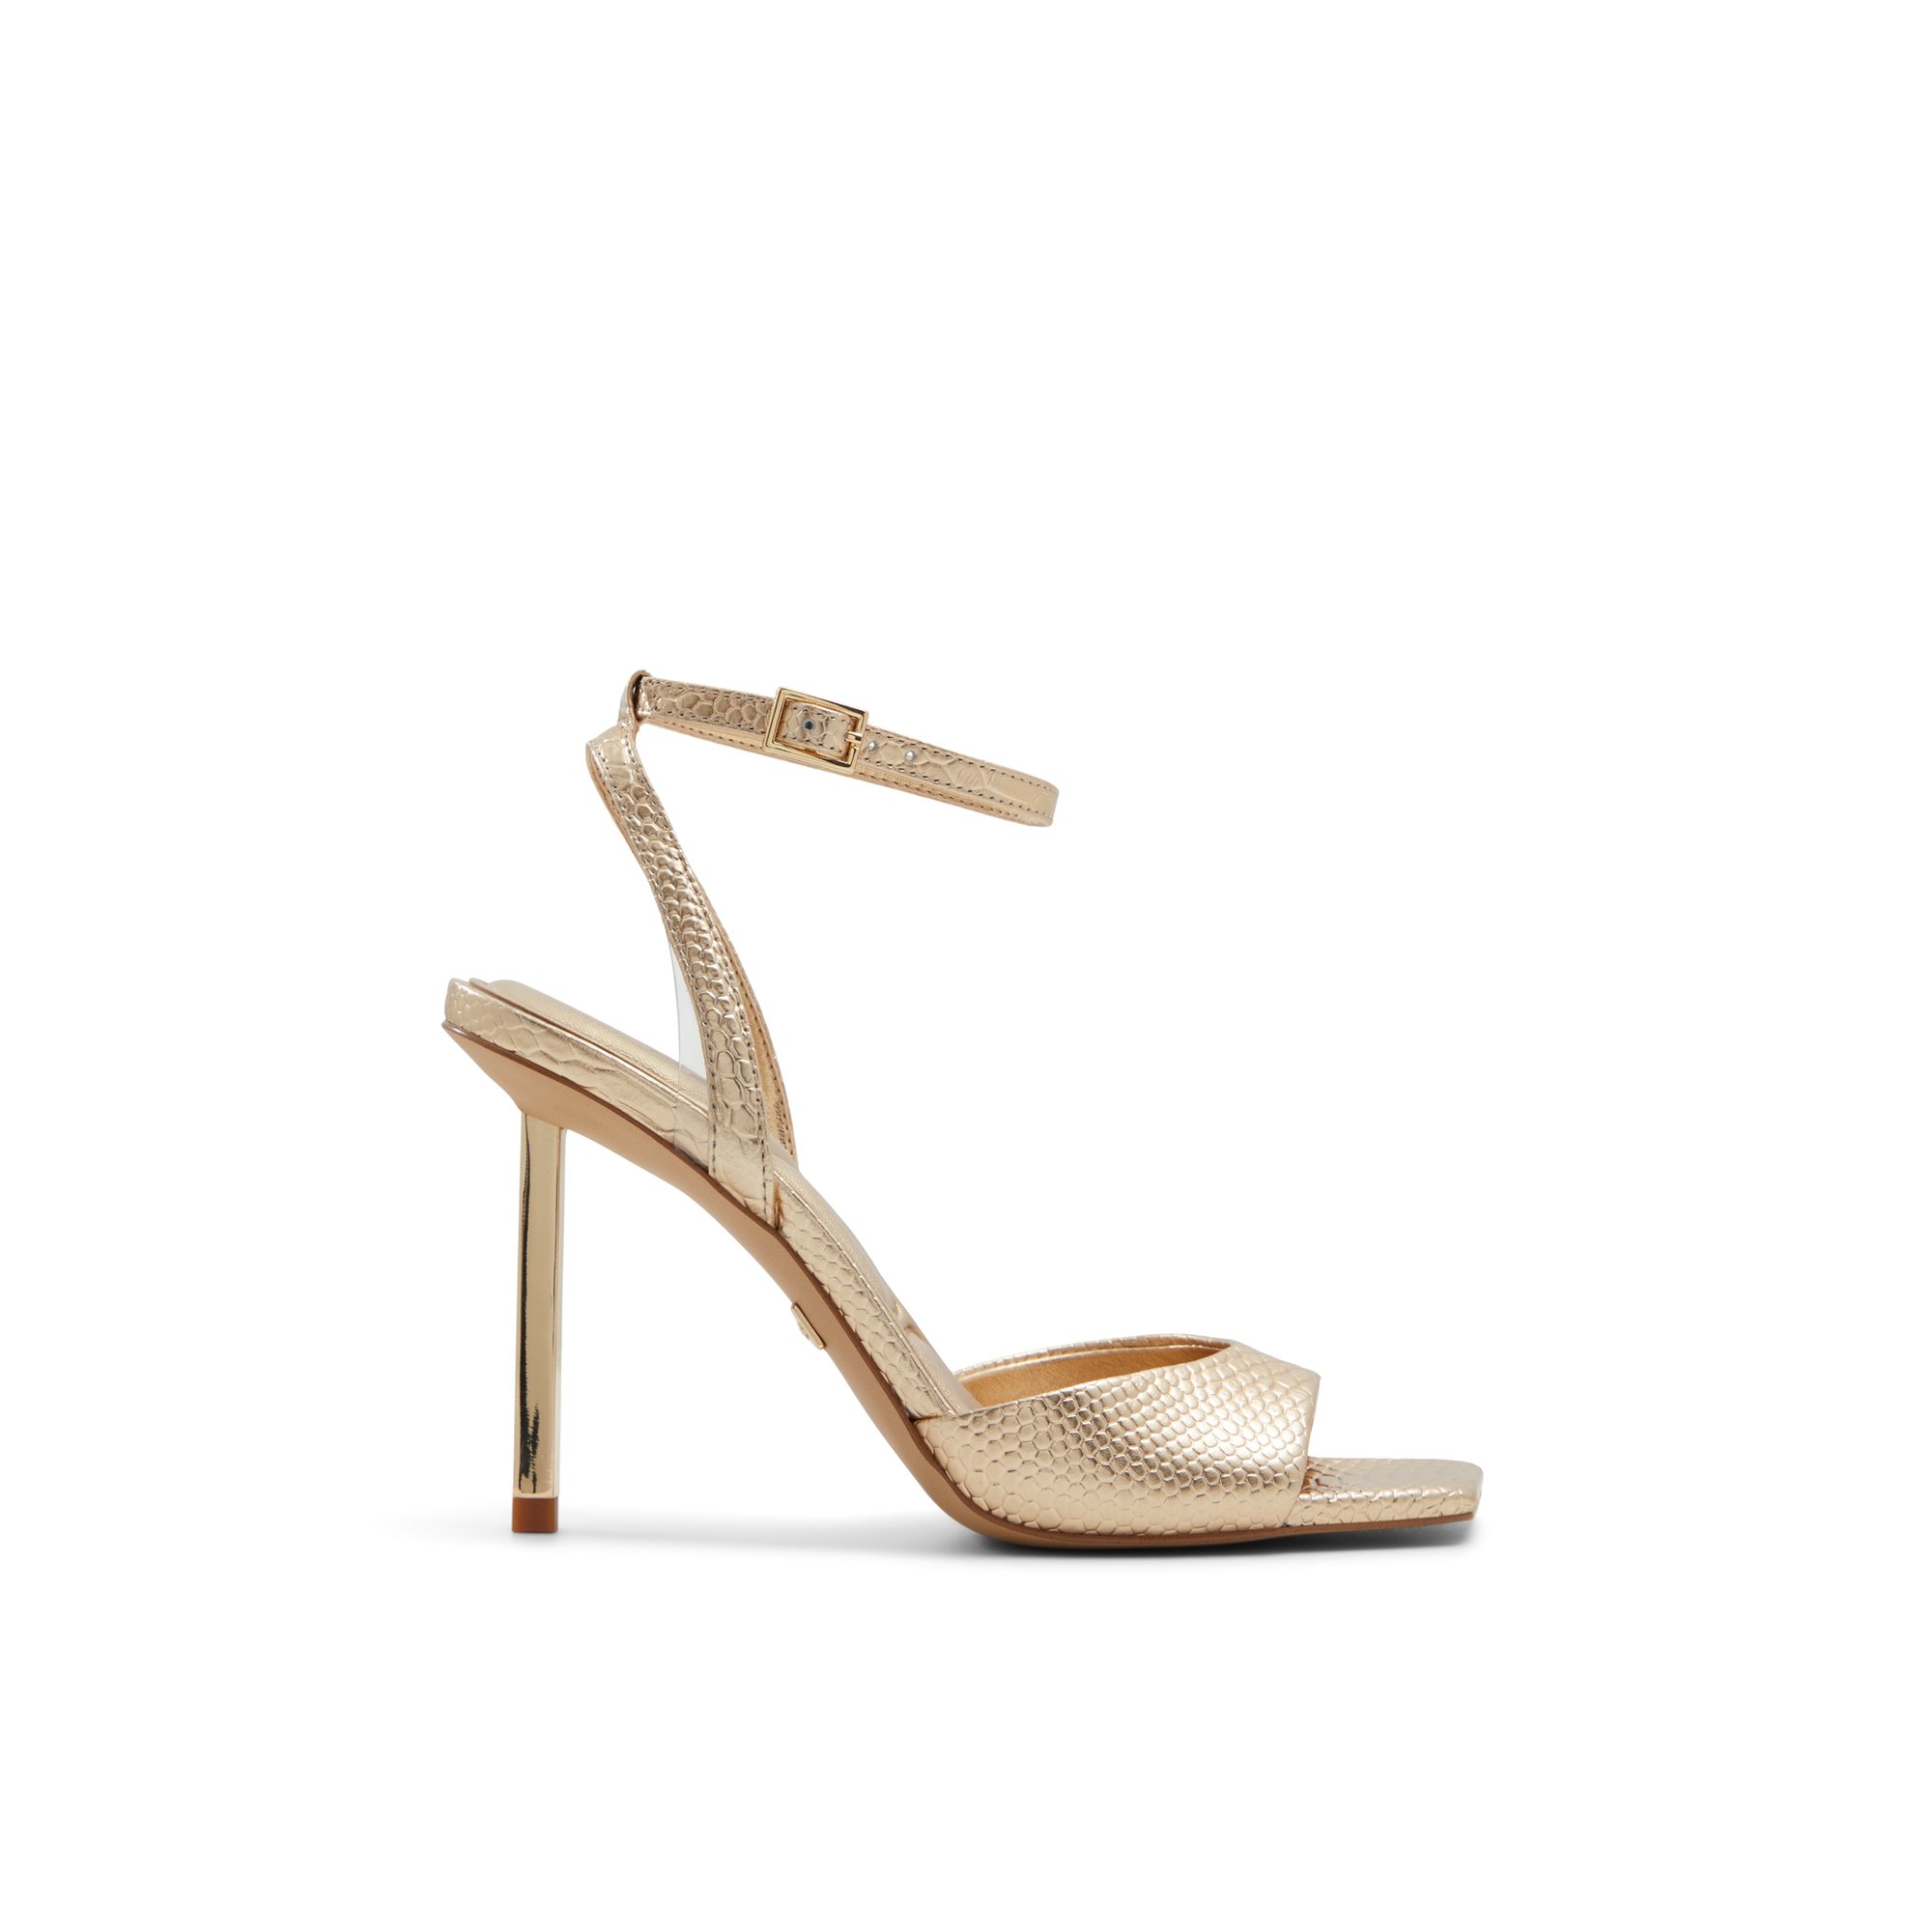 ALDO Lettie - Women's Sandals Strappy - Gold